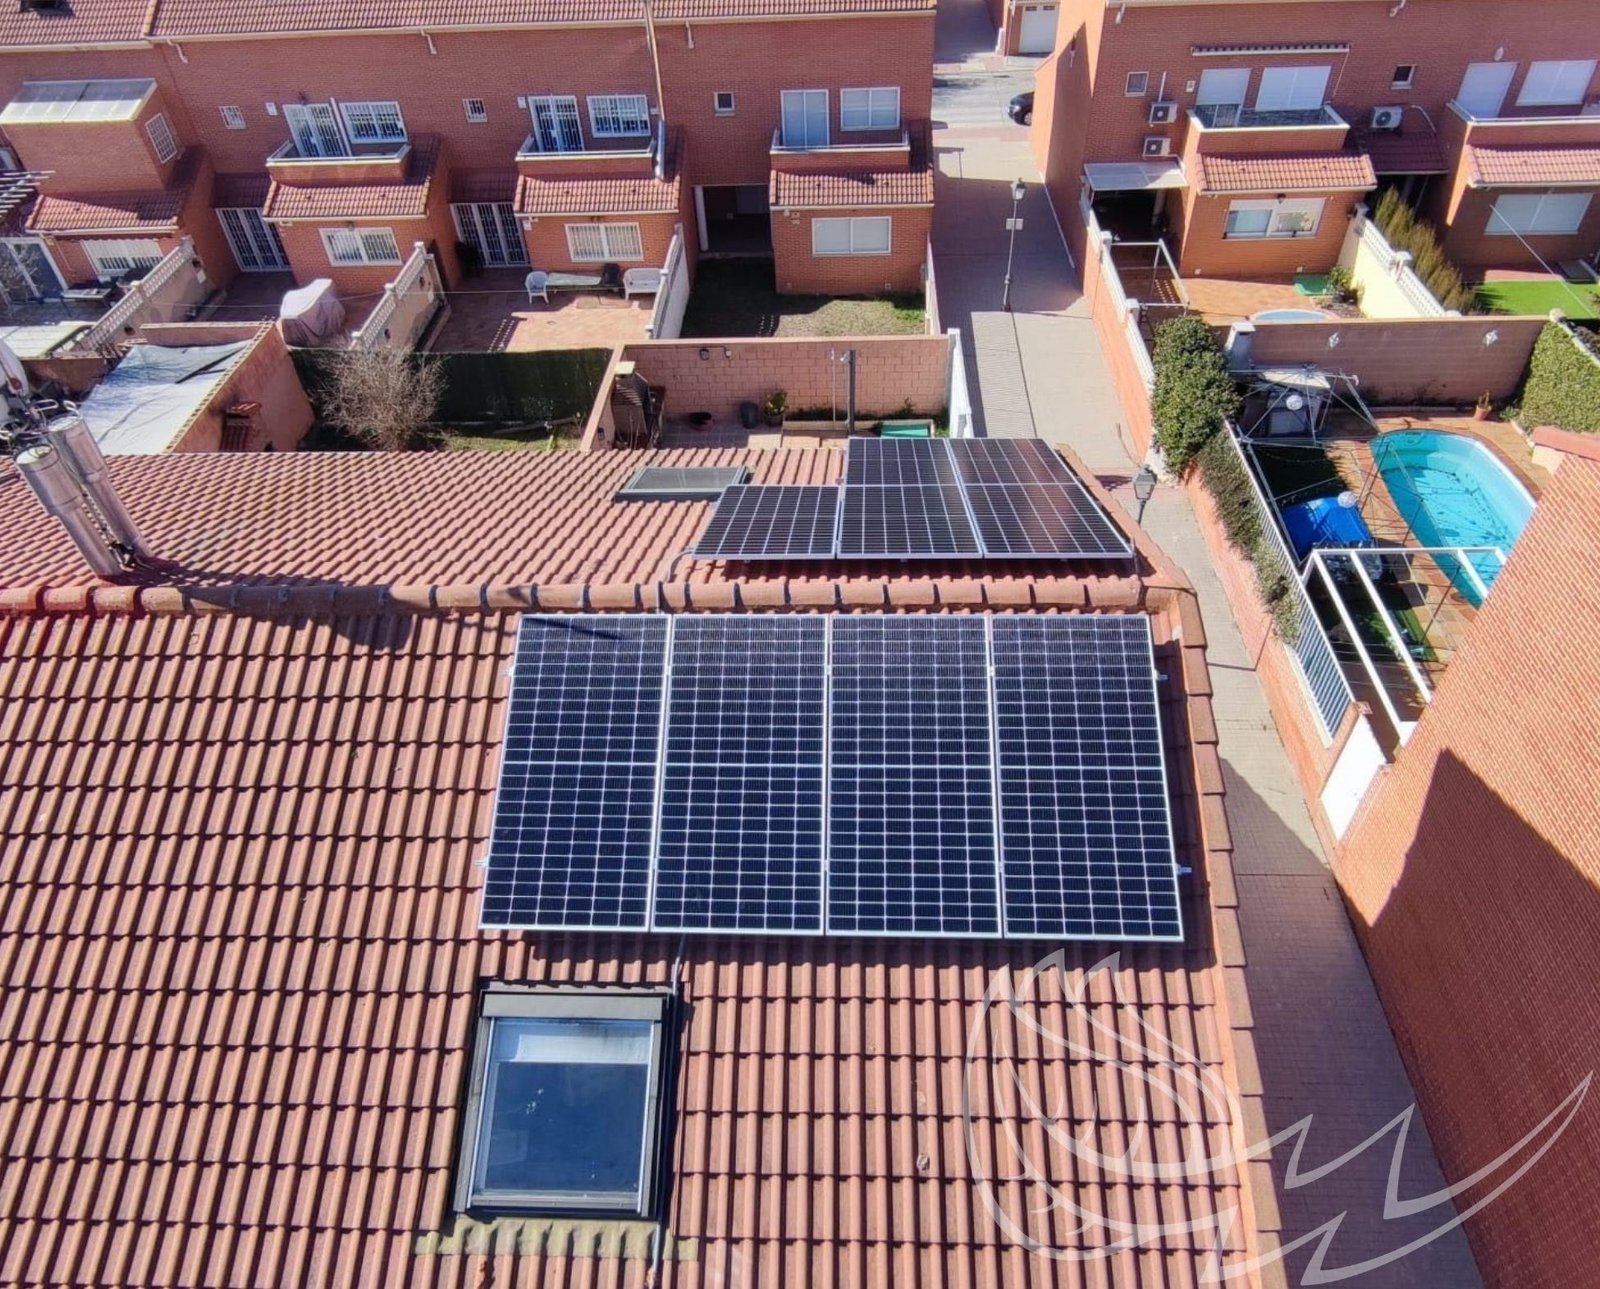 instalacion de paneles solares en tejado residencial